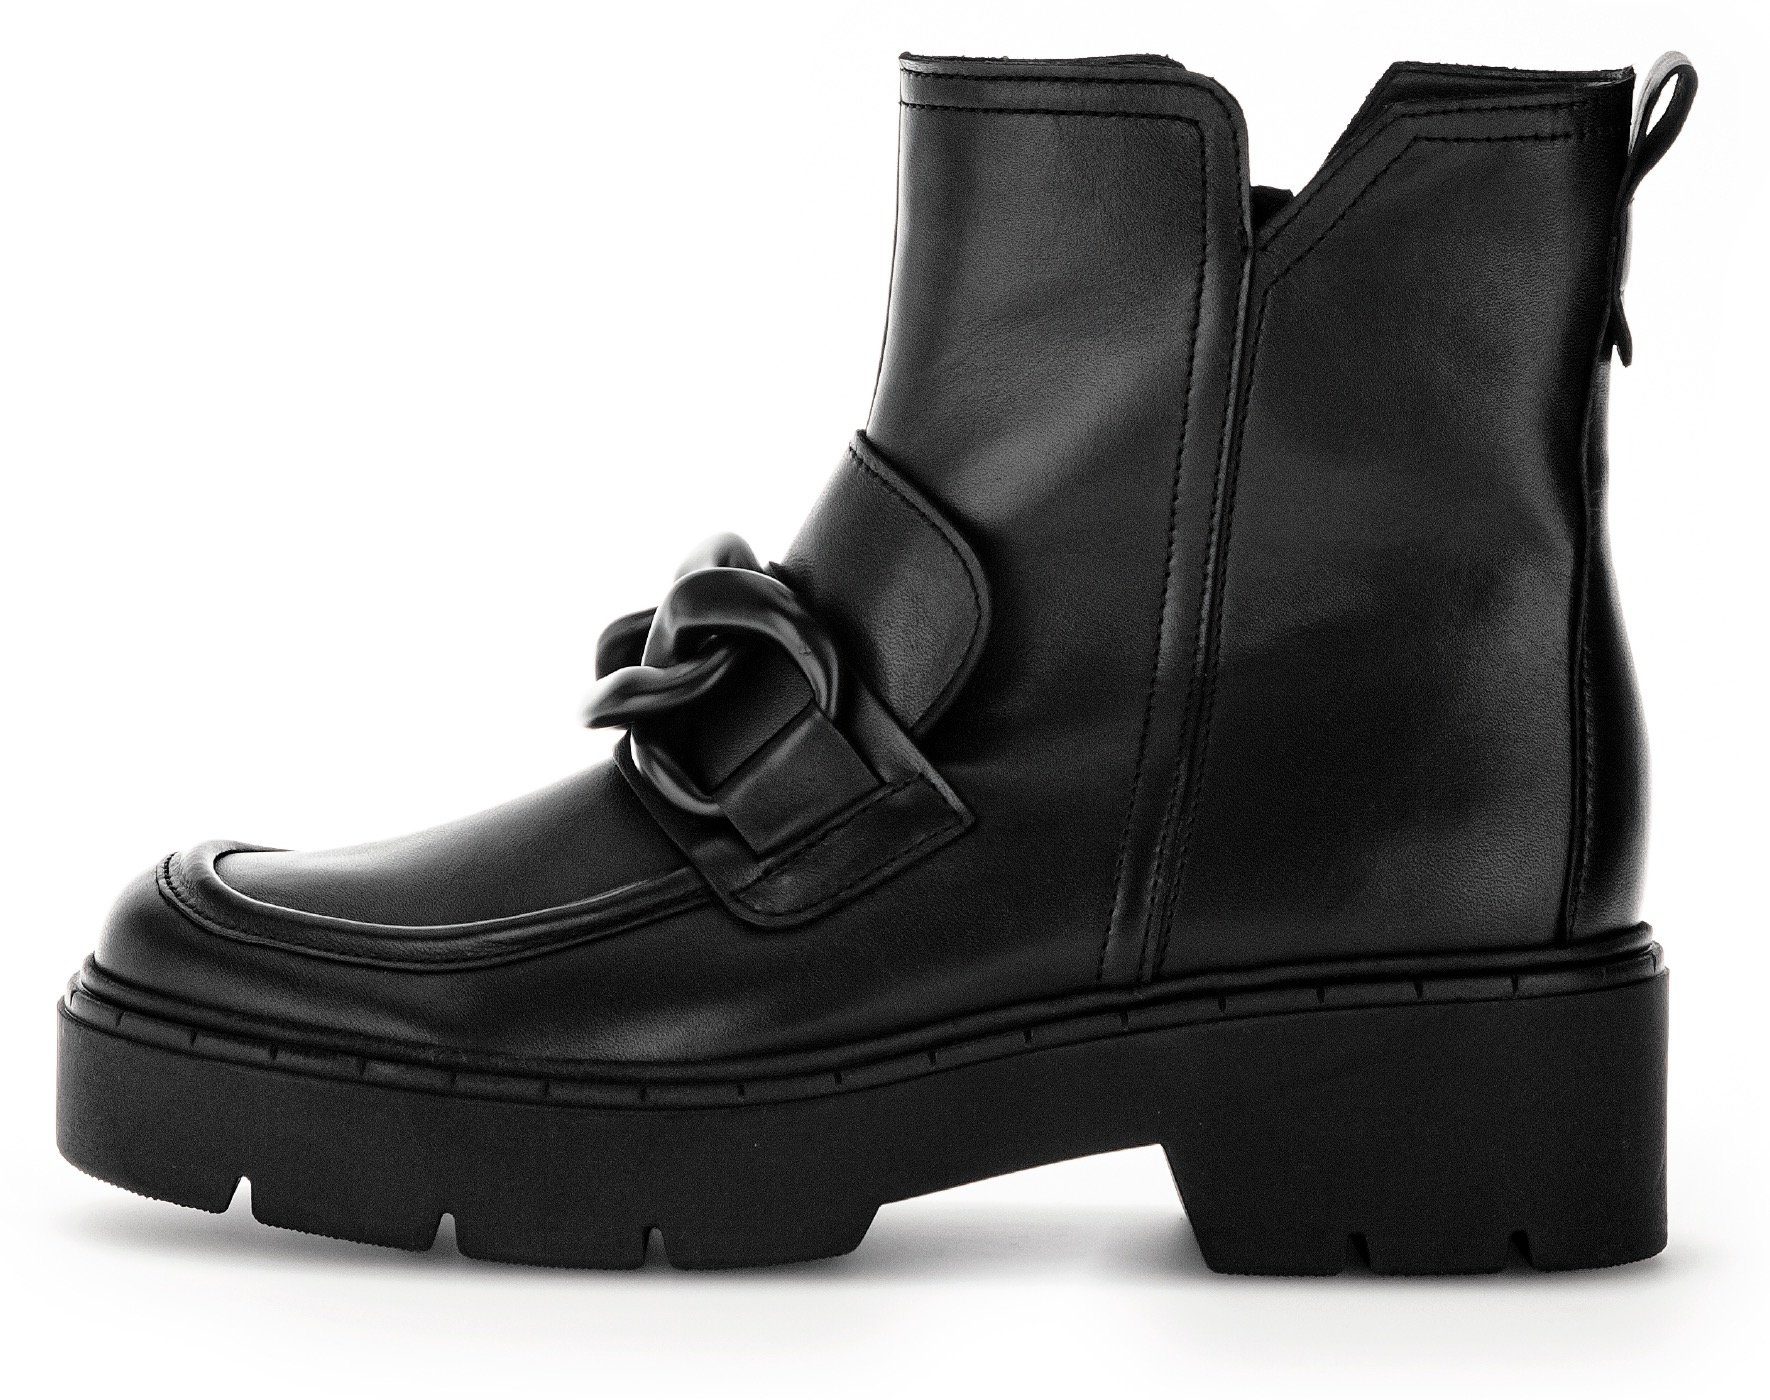 Gabor Stiefelette Fitting-Ausstattung schwarz mit Best